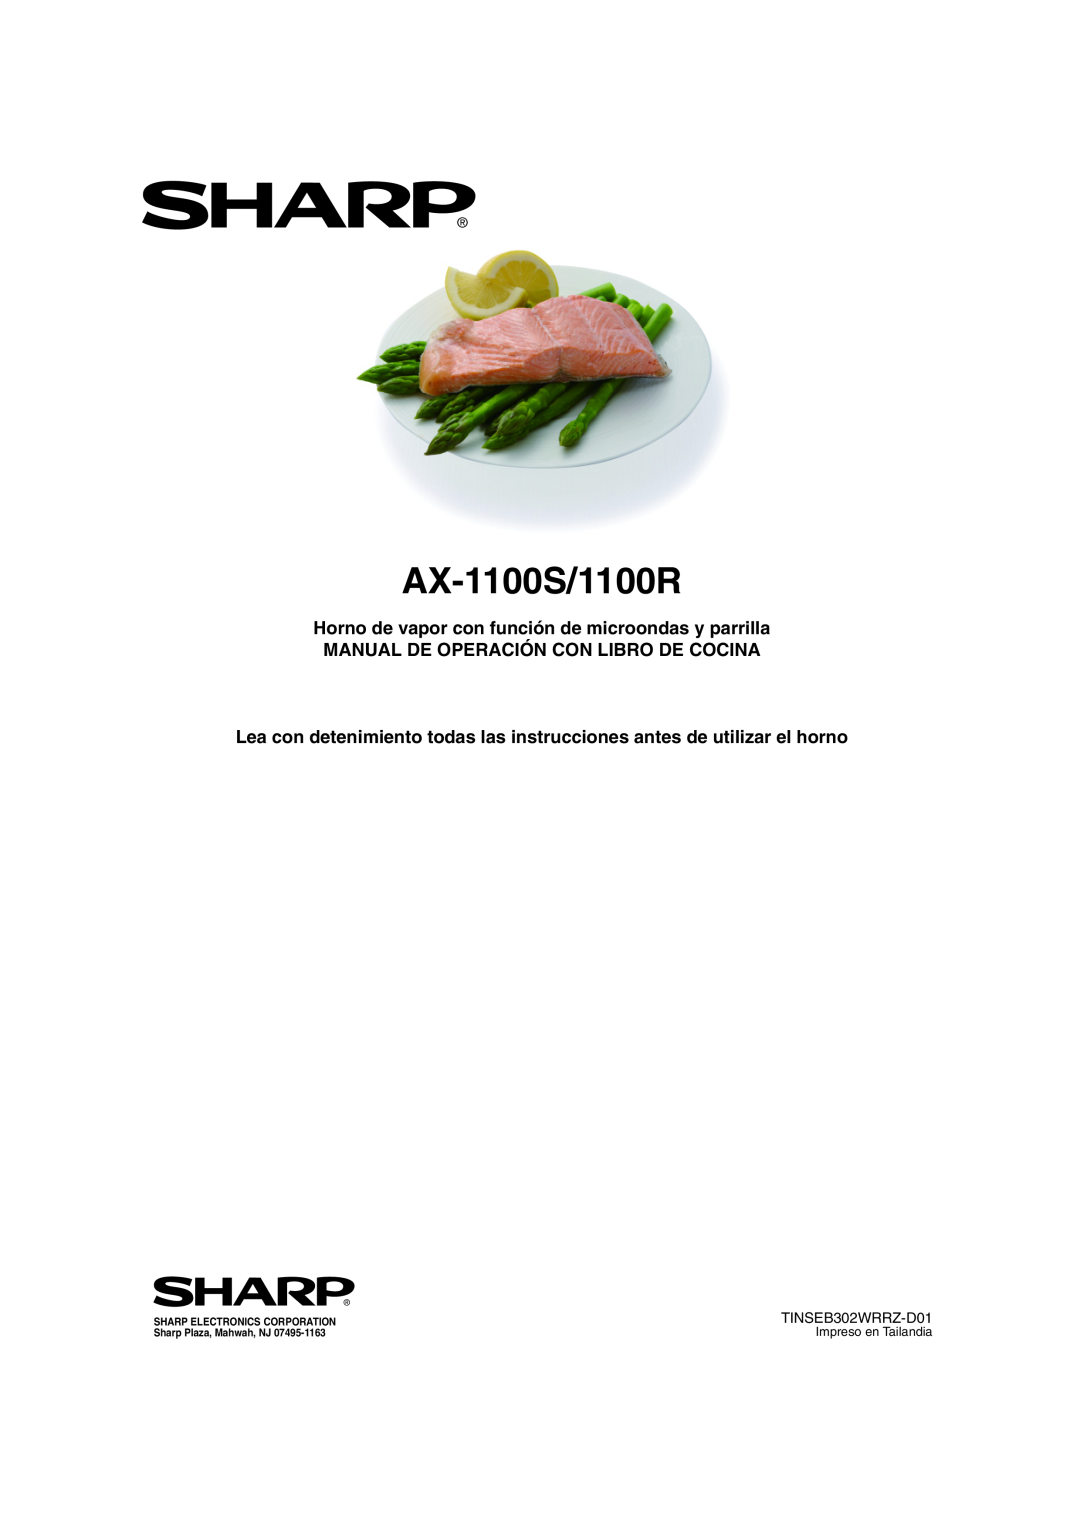 Sharp AX-1100R, AX-1100S Horno de vapor con función de microondas y parrilla, Manual De Operación Con Libro De Cocina 